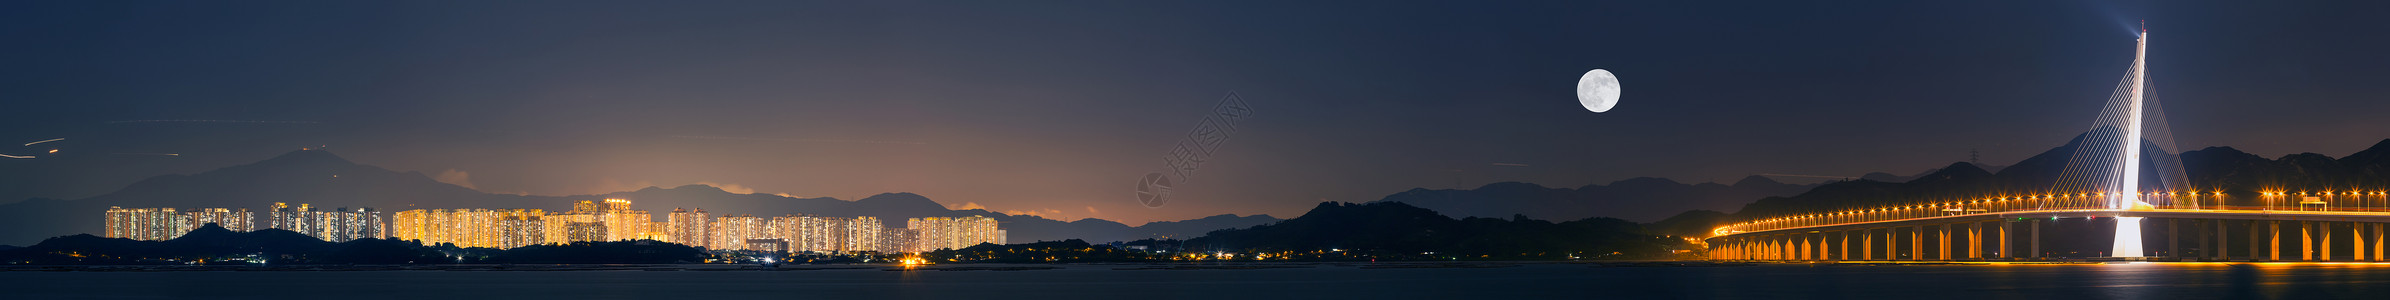 明月寄相思深圳湾跨海大桥城市风光夜景全景图背景